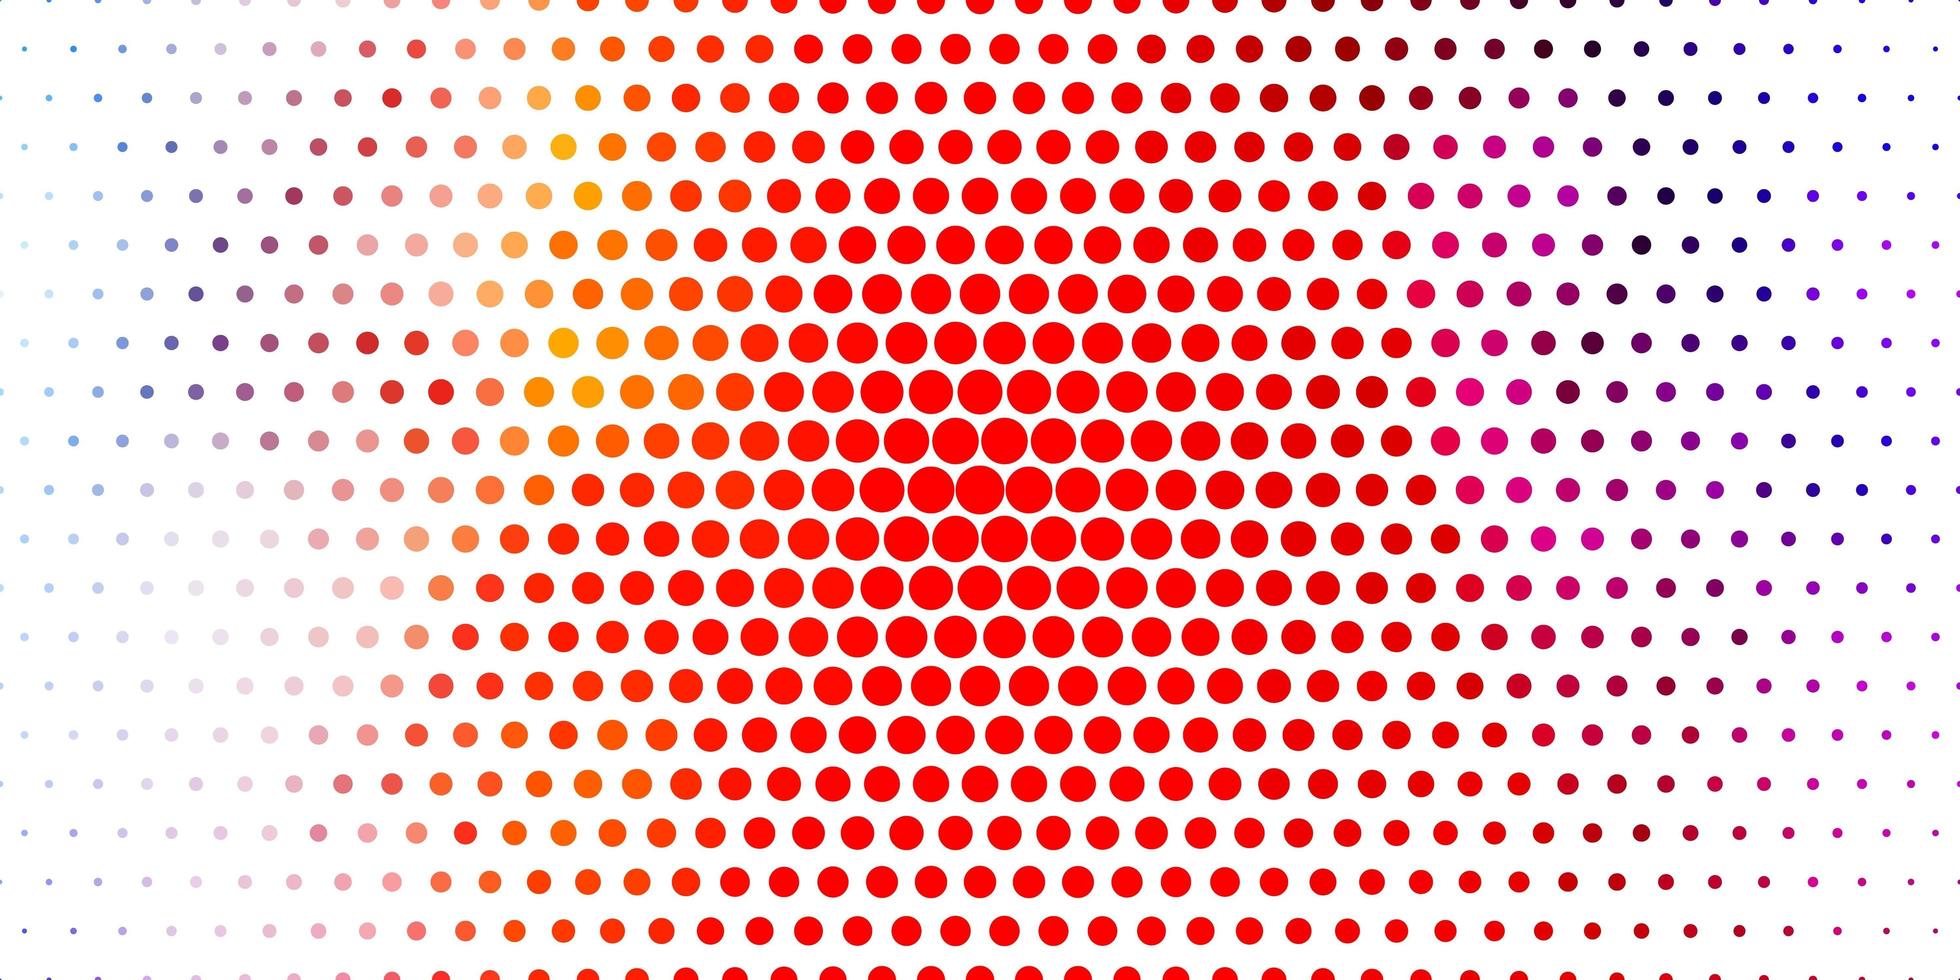 licht veelkleurige vector sjabloon met cirkels.